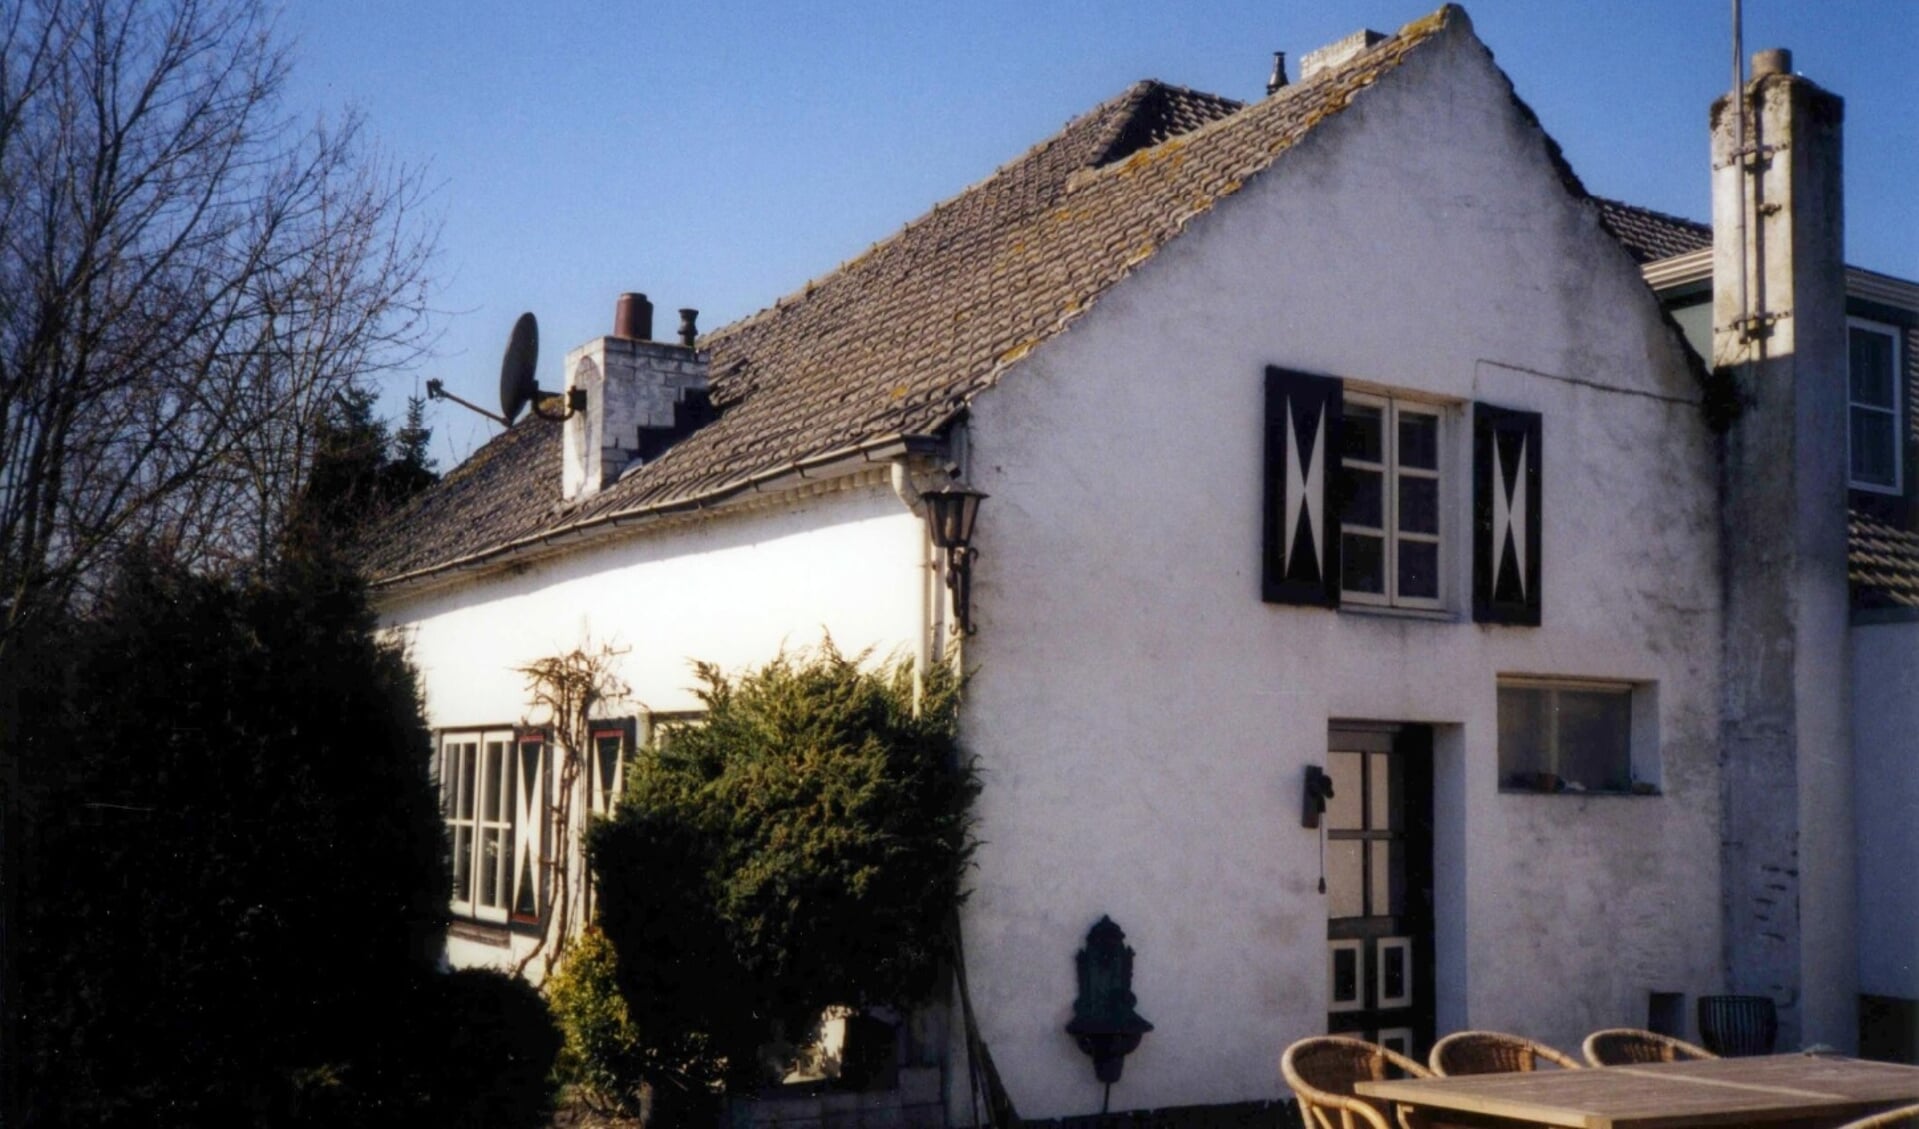 De oude Krekelshof aan de Krekelshofstraat in Mariaheide werd in 1996 gesplitst en herbouwd. (Foto: Vehchele, collectie Verbakel).